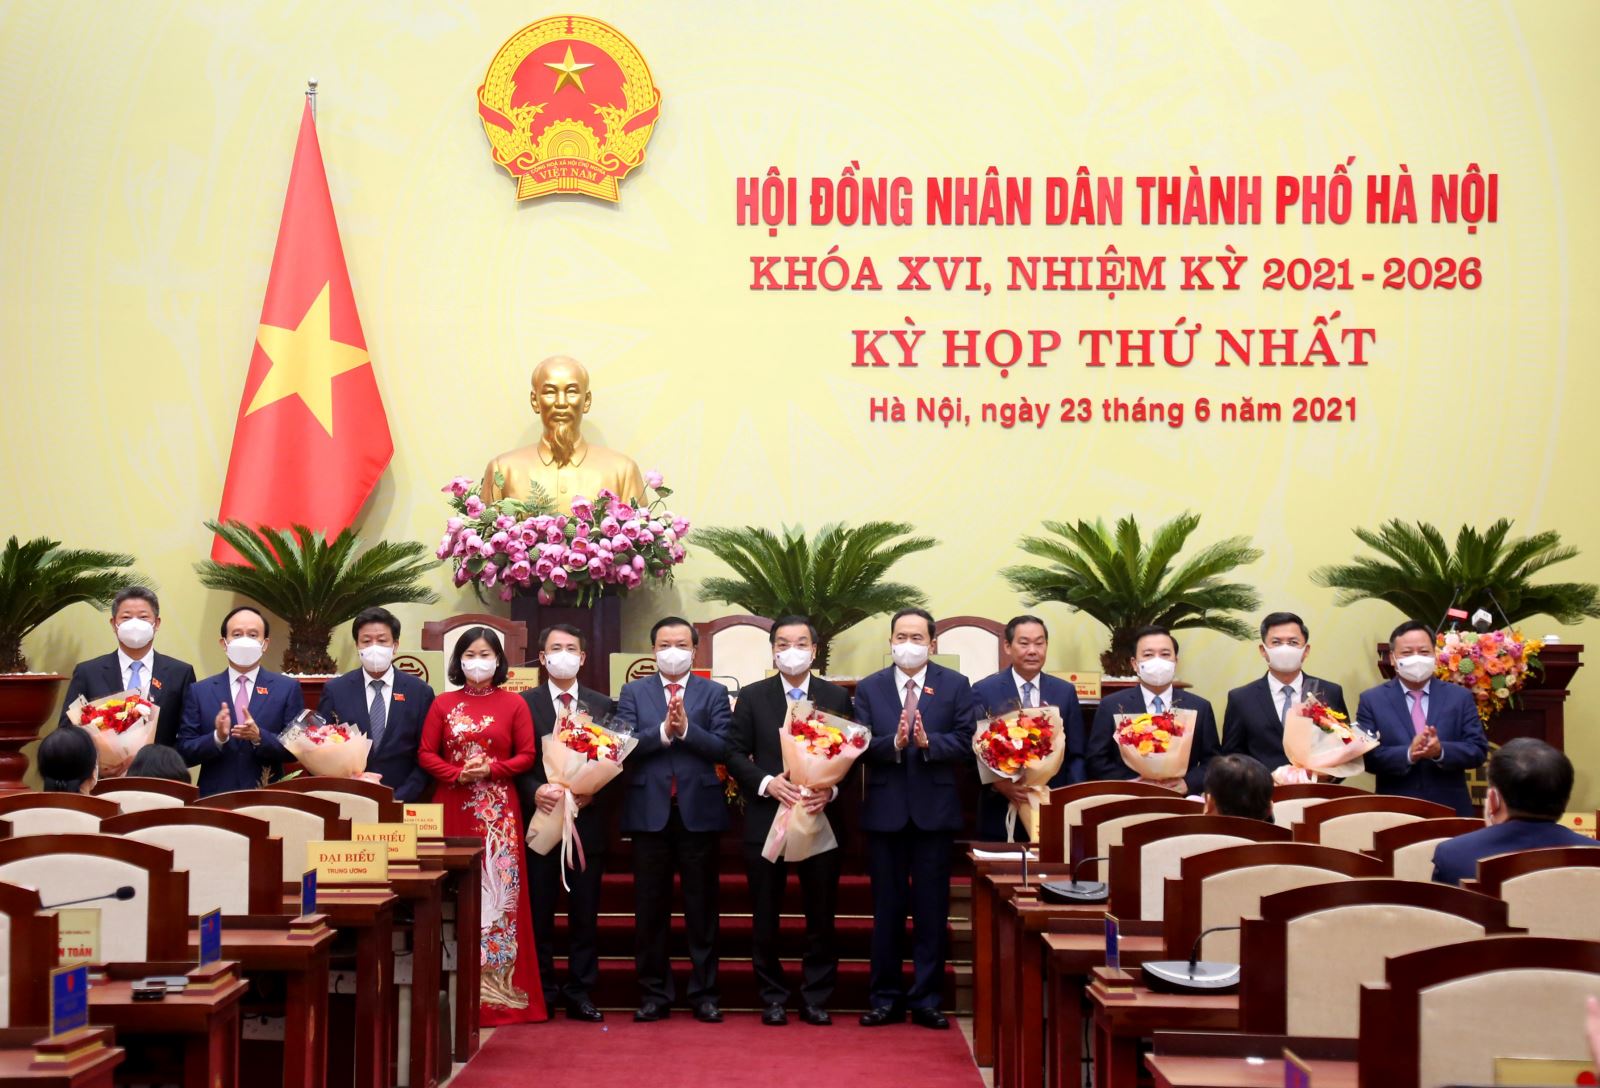 Phó Chủ tịch Thường trực Quốc hội Trần Thanh Mẫn tặng hoa lãnh đạo UBND thành phố Hà Nội Khoá XVI